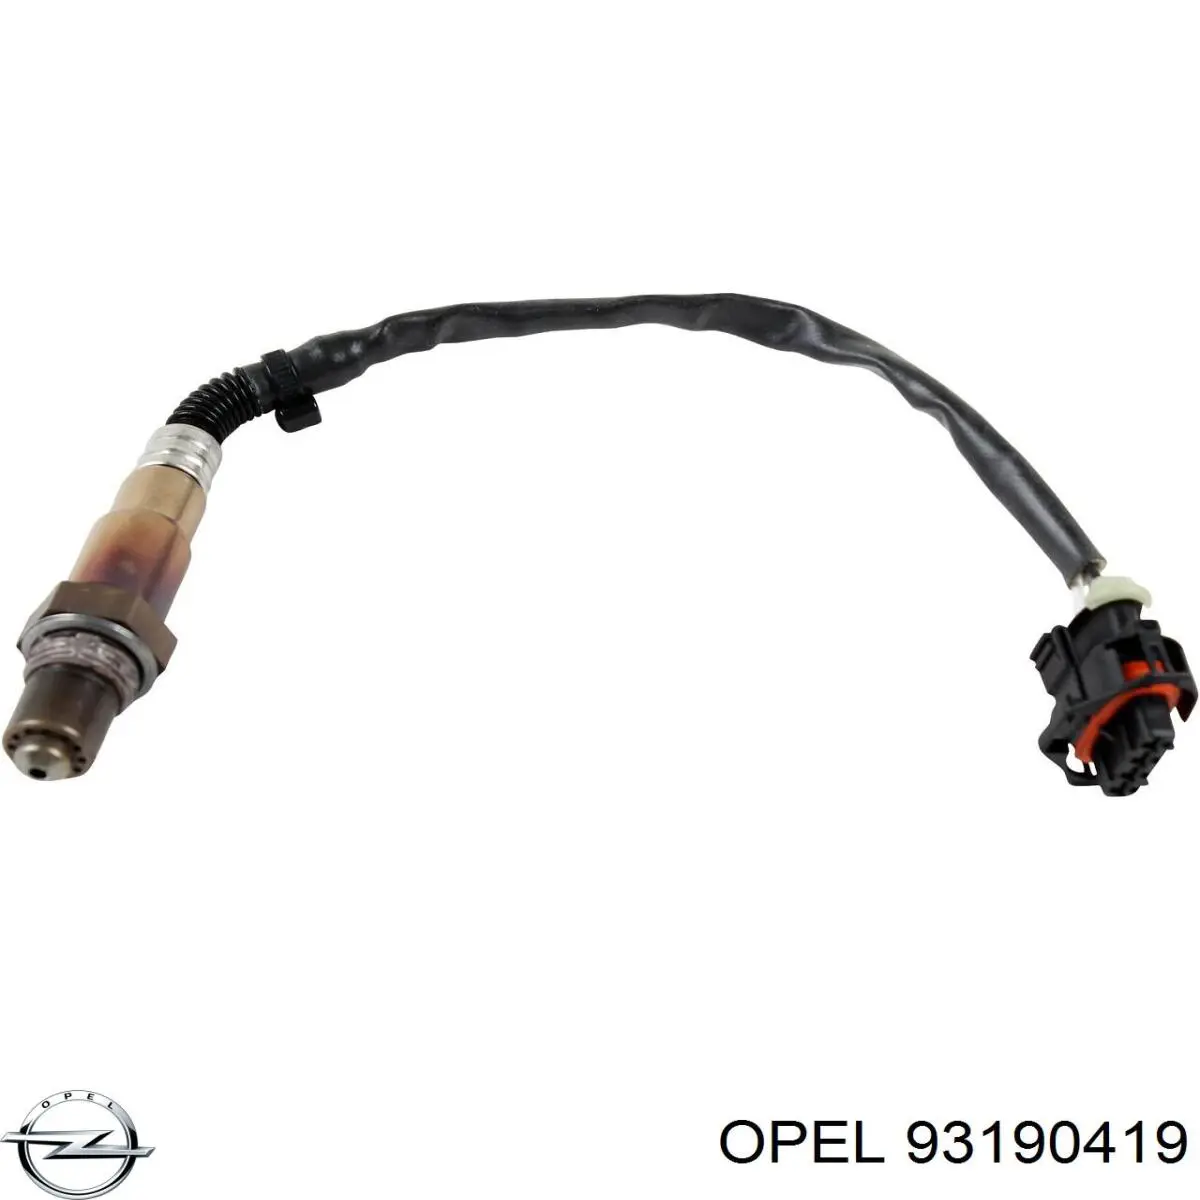 93190419 Opel sonda lambda sensor de oxigeno para catalizador